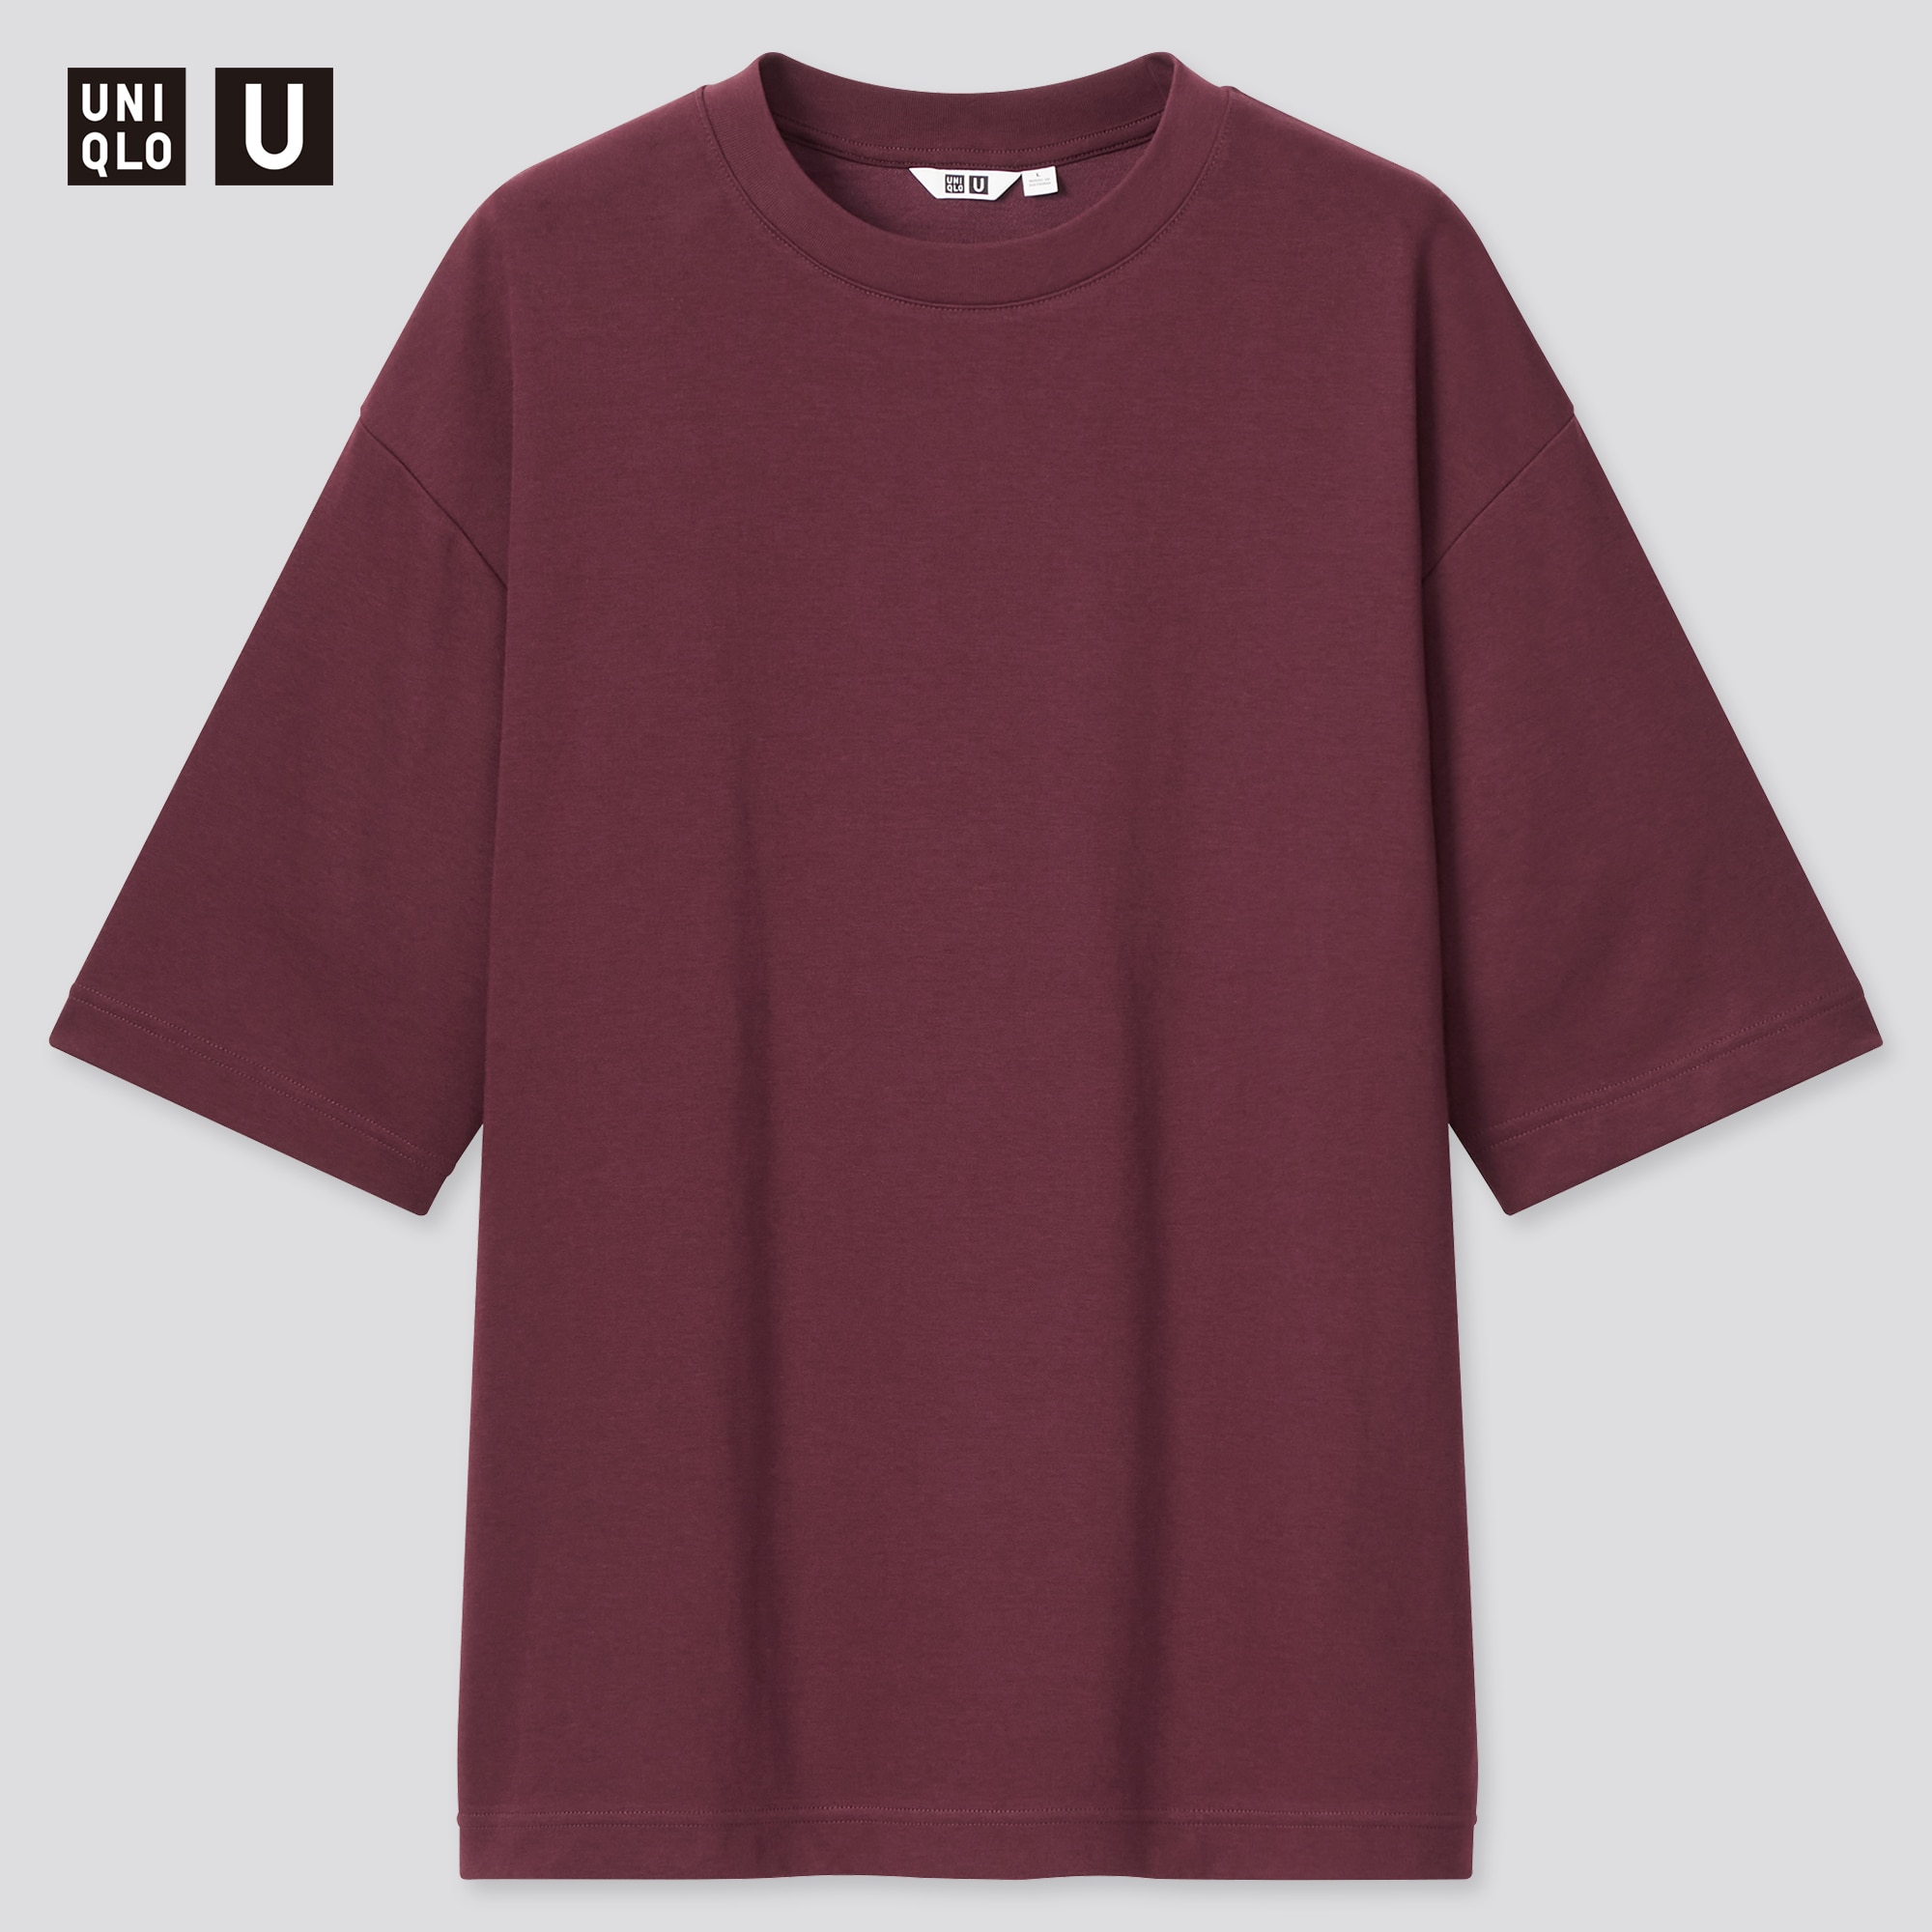 T-shirt oversize uni noir - Uncontrolled® - 100% coton.